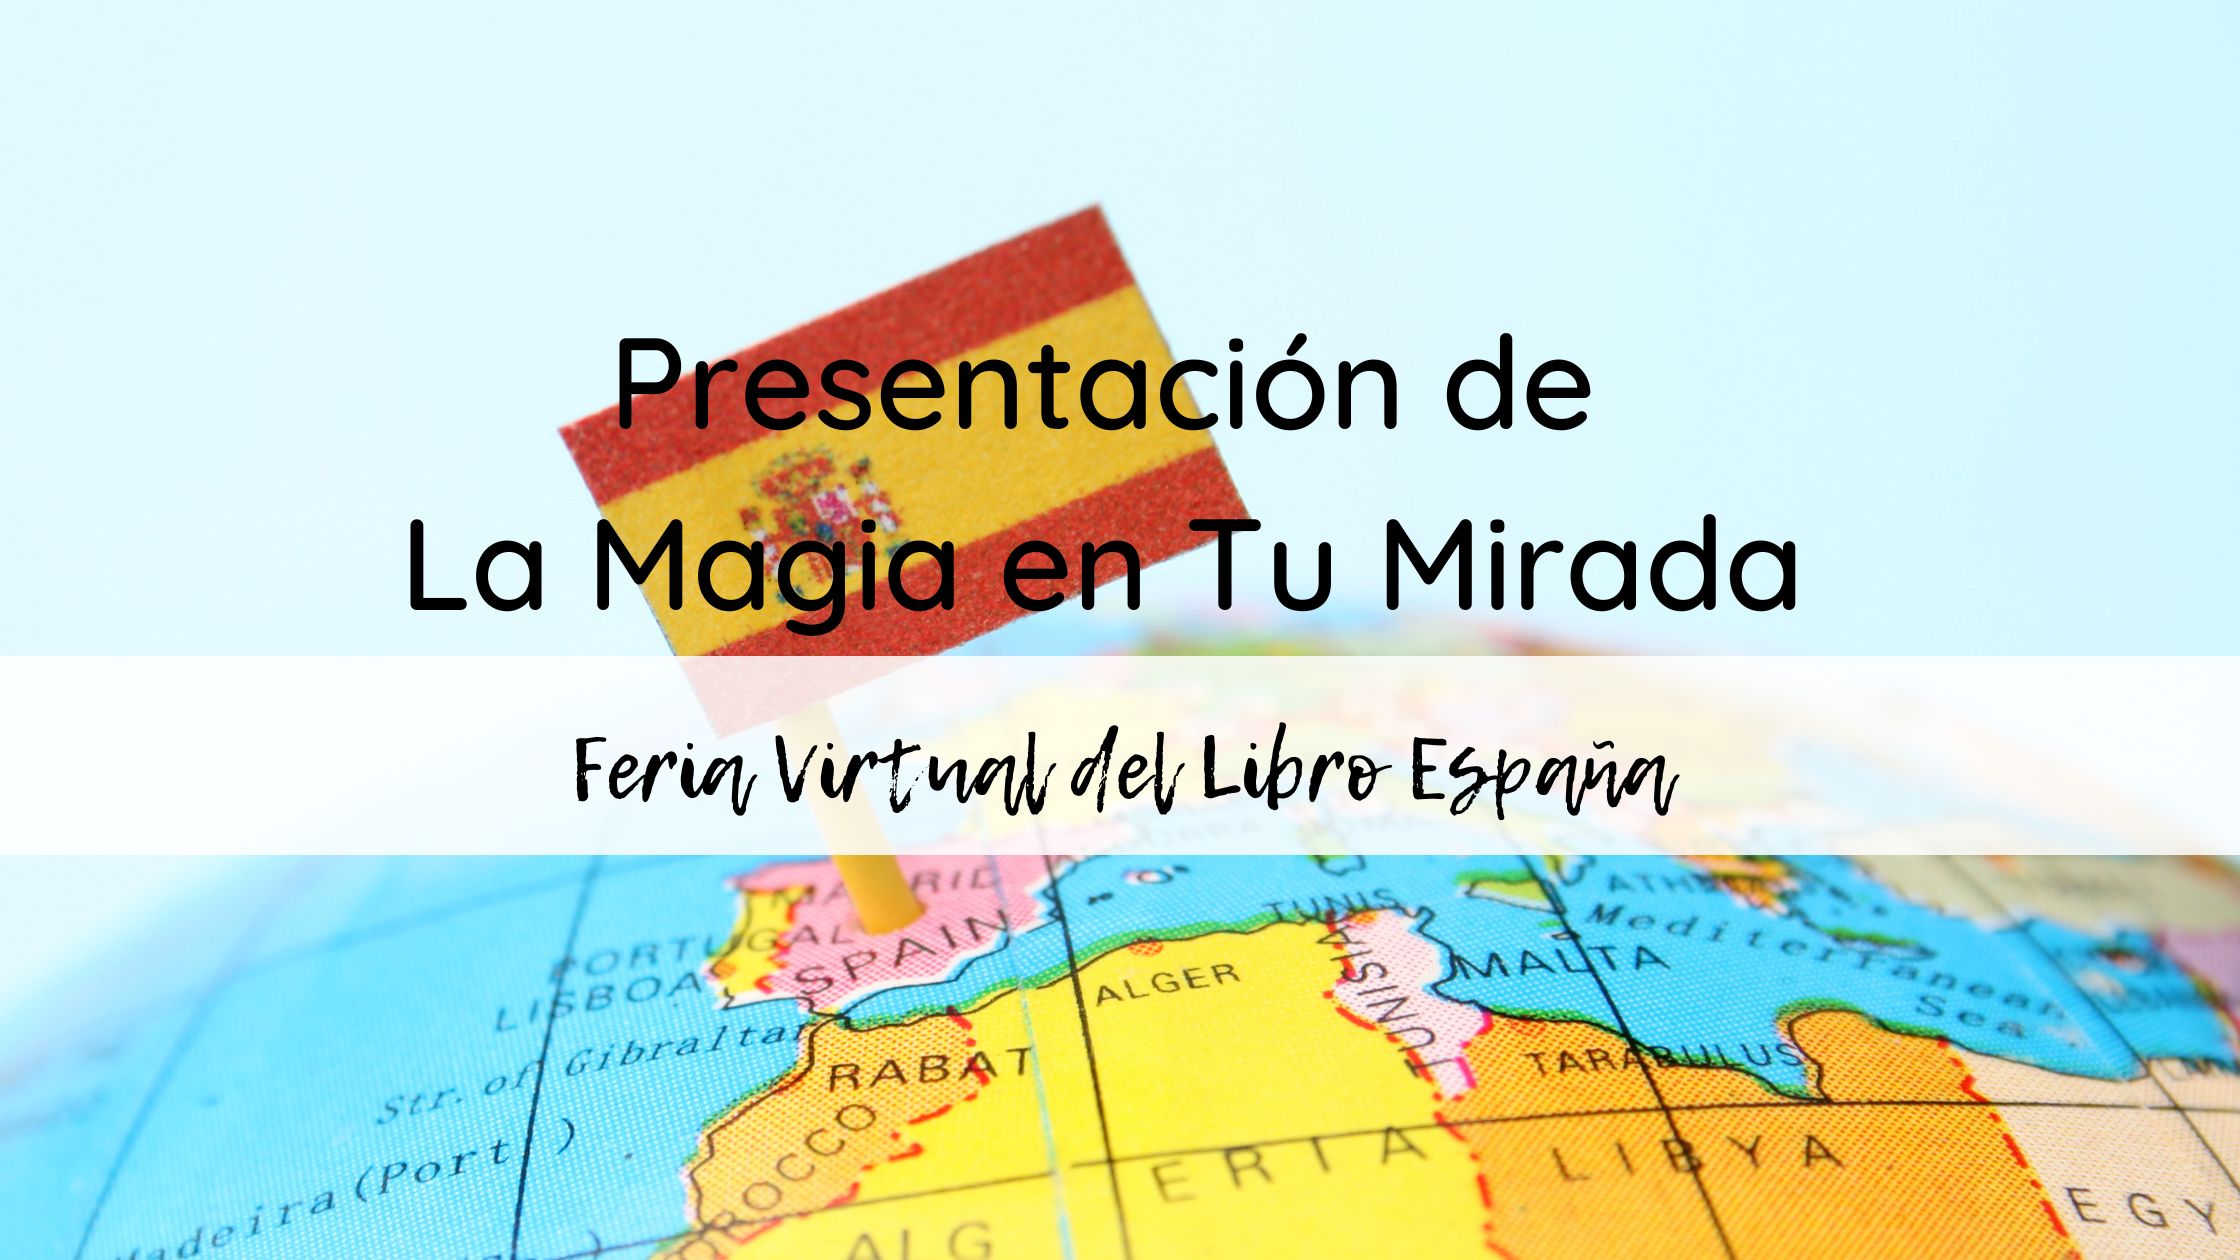 Presentación de La Magia en Tu Mirada en La Feria Virtual del Libro España